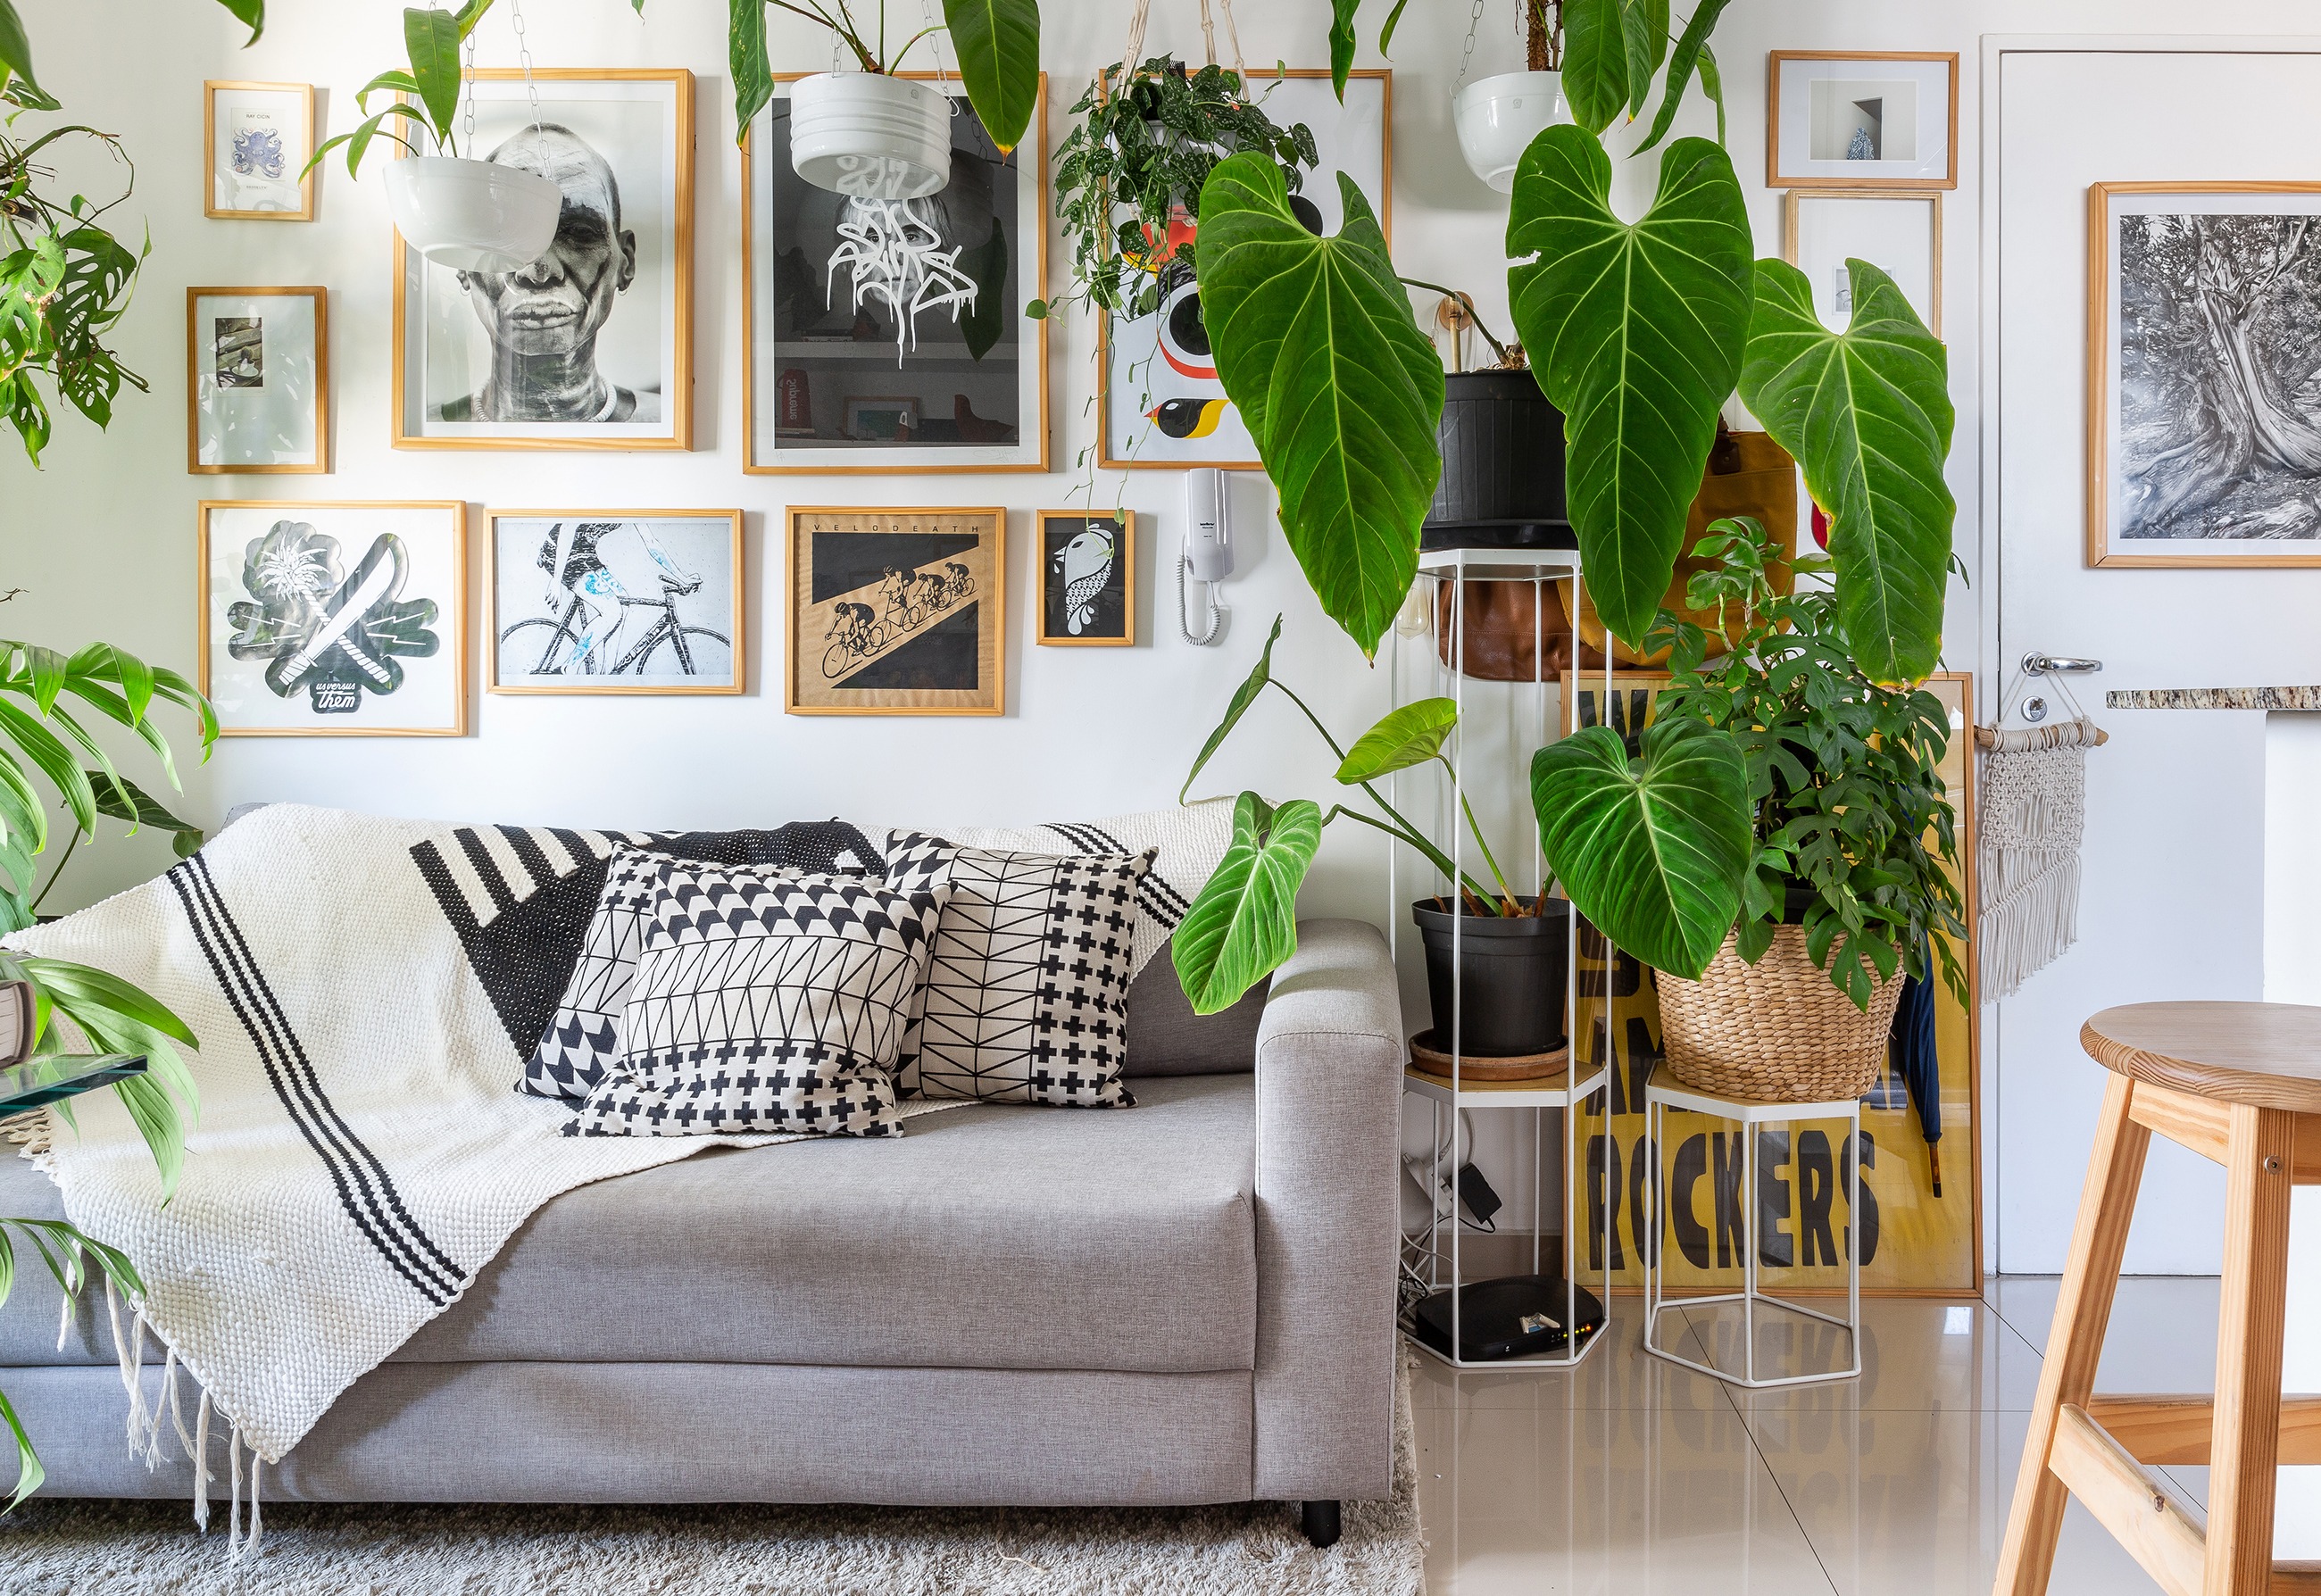 Muitas plantas em um apartamento pequeno | Histórias de Casa ...